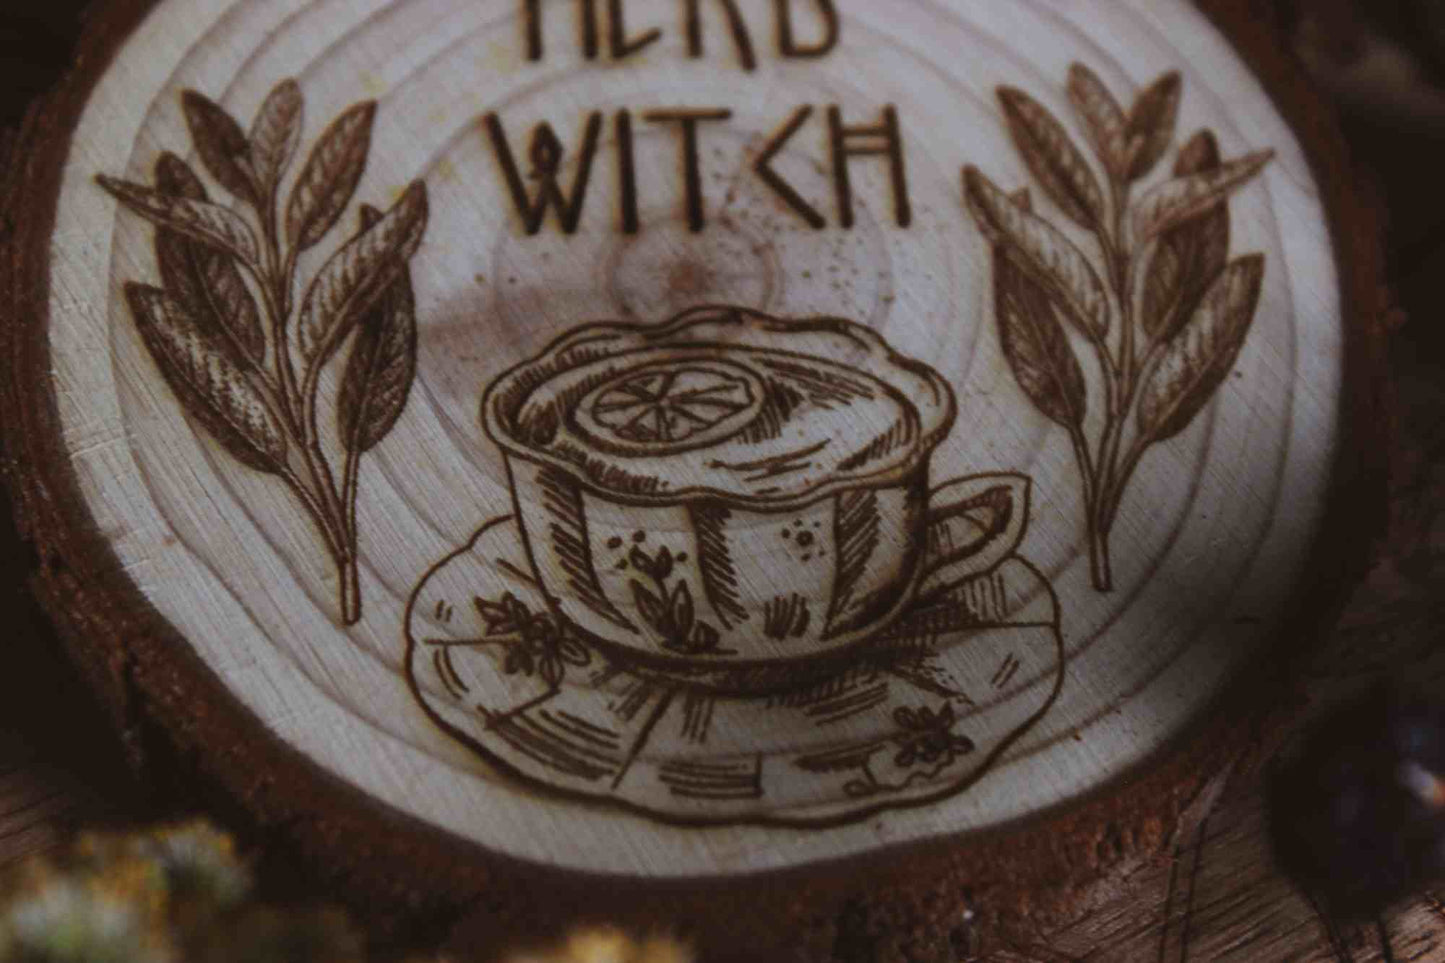 Nahaufnahme Wandbild aus Holz "Herb Witch" - Wandbild aus Holz "Herb Witch" - Dieses Bild zeigt eine kunstvoll gravierte Holzscheibe mit der Inschrift “HERB WITCH”, umgeben von einer natürlichen und mystischen Atmosphäre. Die Gravur stellt eine Tasse Tee dar, die von zwei Zweigen mit Blättern flankiert wird, 